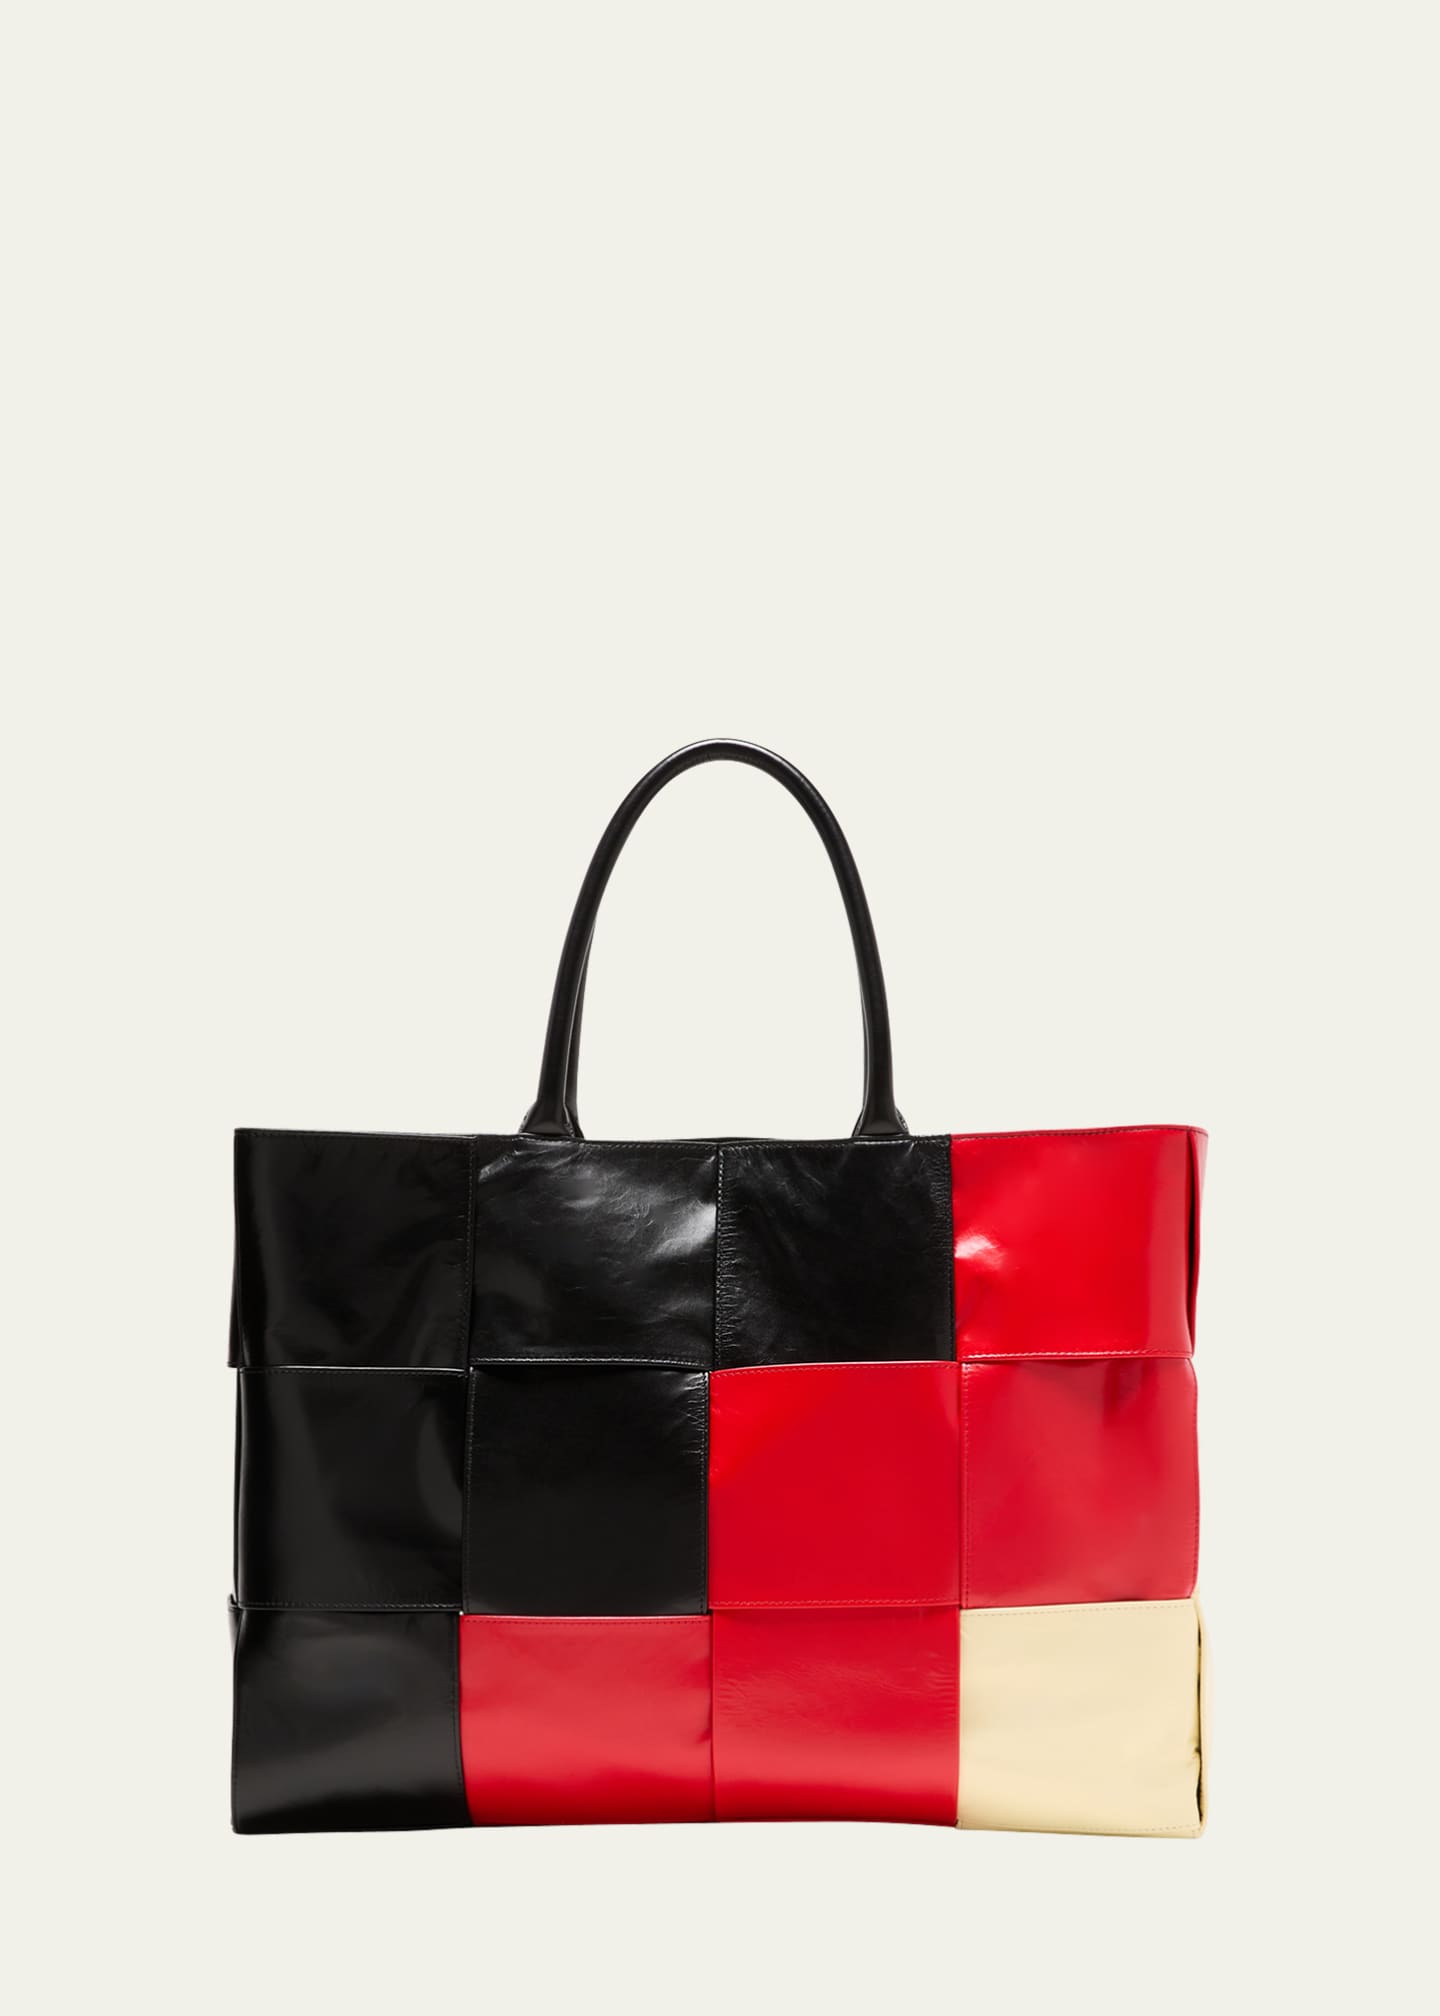 Colorblock Denim Bucket Bag, Stylish Shoulder Bag For Women, Tote